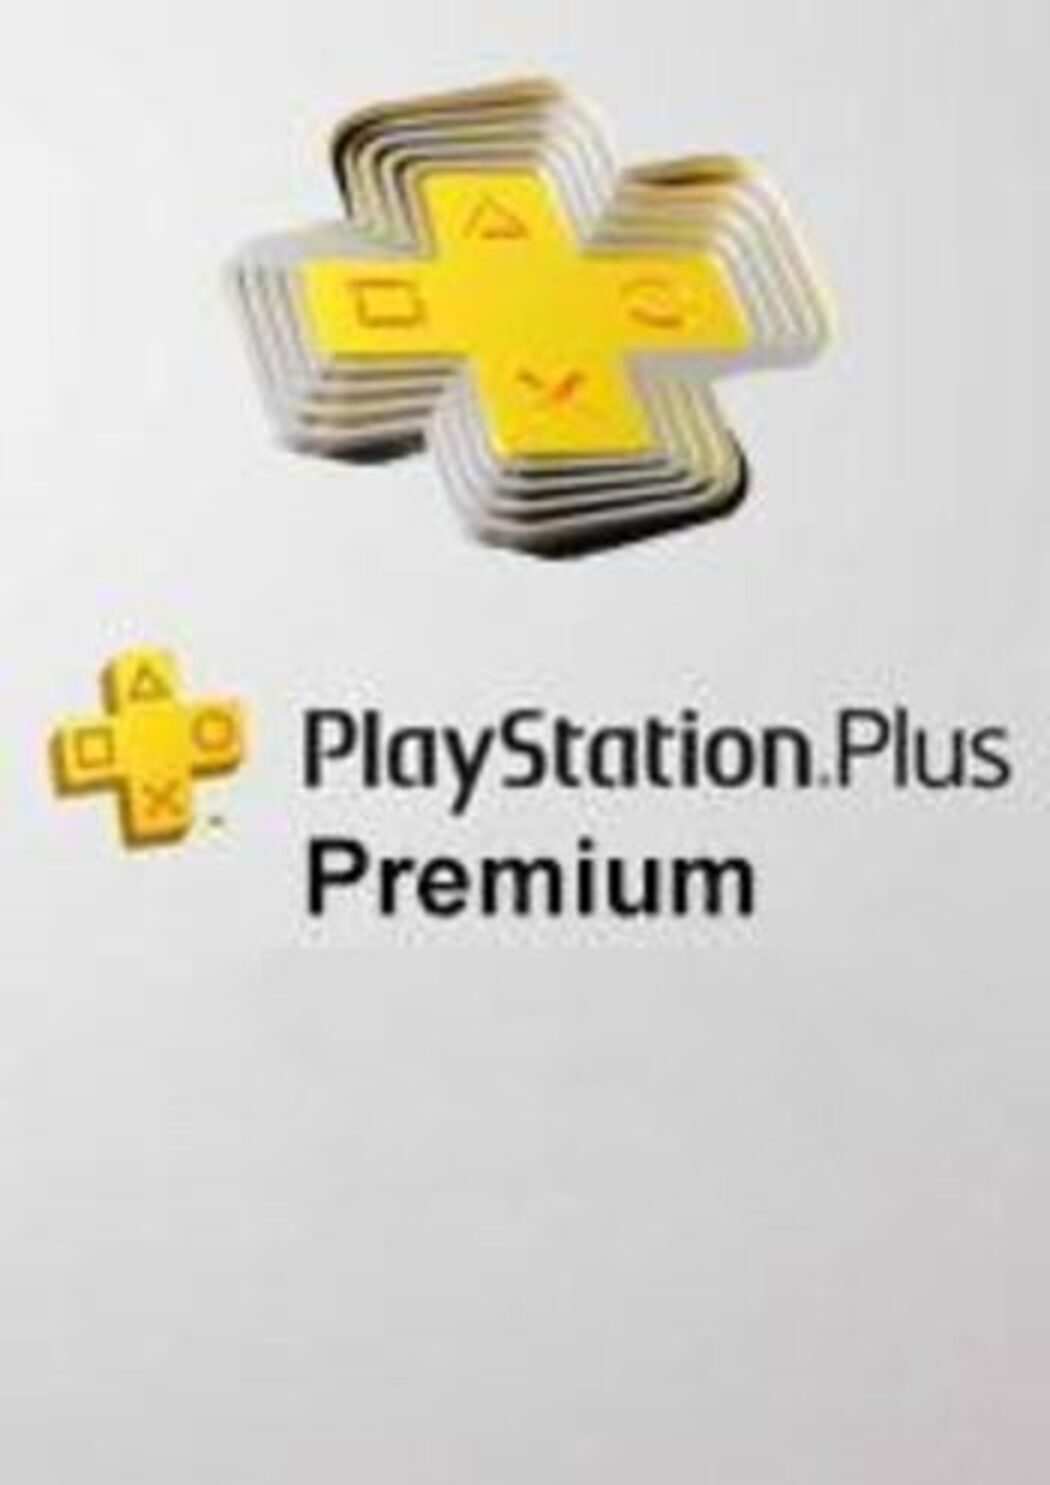 Is PS Plus Premium Worth the Price?